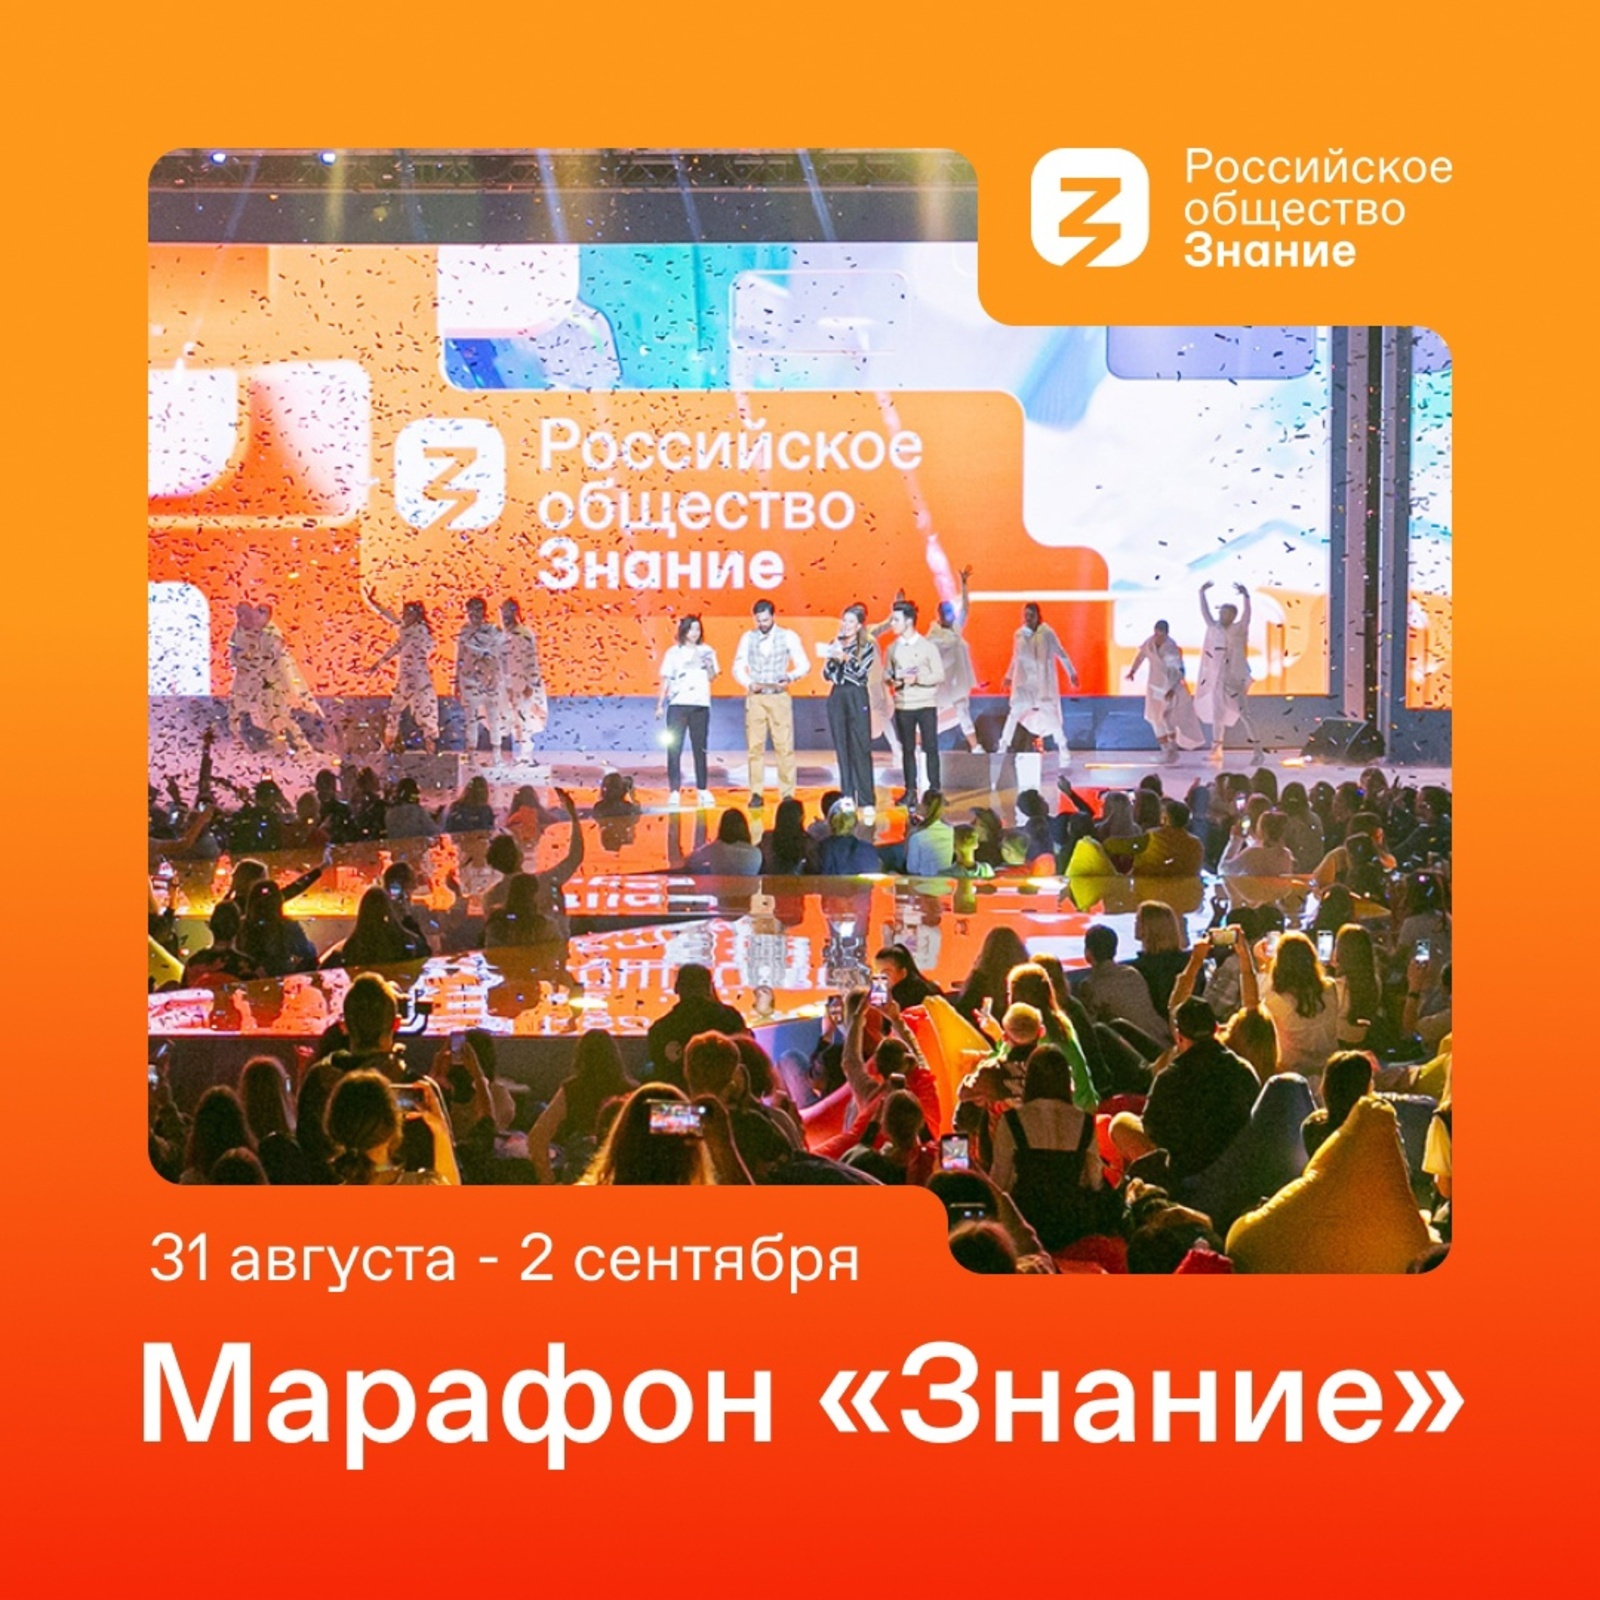 Главные уроки: Российское общество «Знание» проведет просветительскую акцию «Поделись своим Знанием» в рамках осеннего марафона